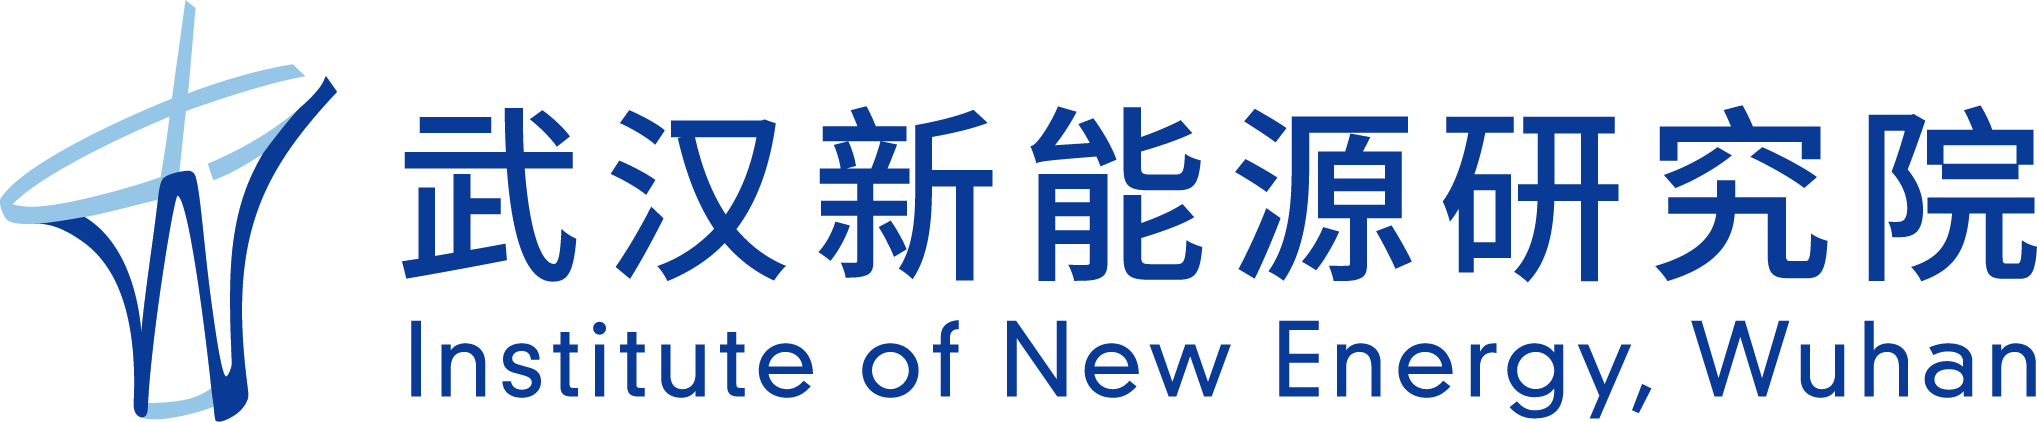 新能源研究院logo.png